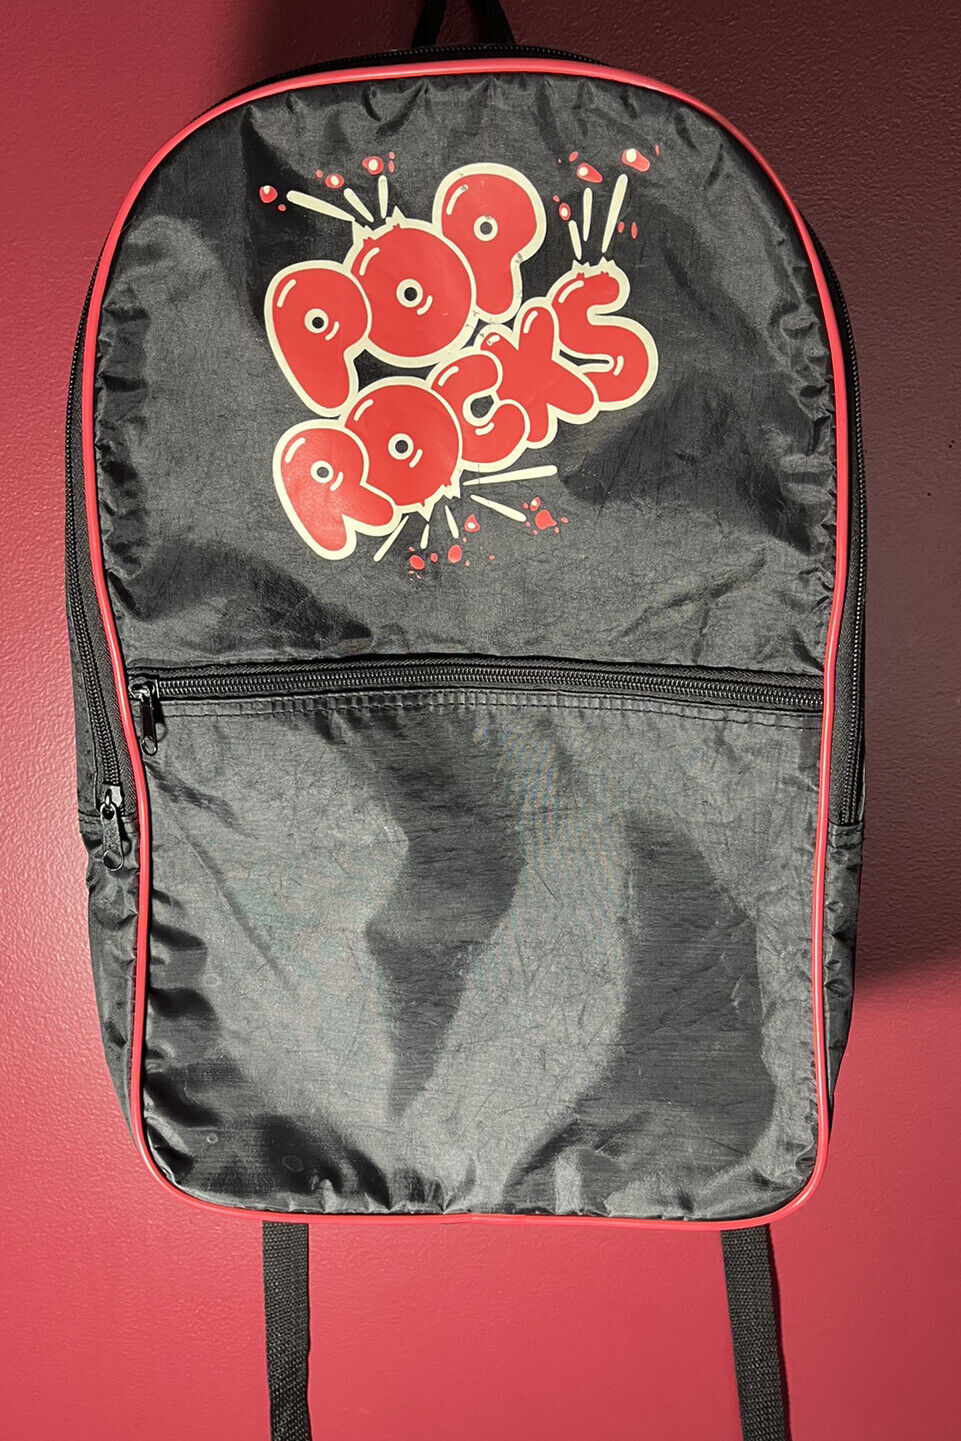 Vintage 1980s Pop Rocks Candy Red Black Backpack … - image 1